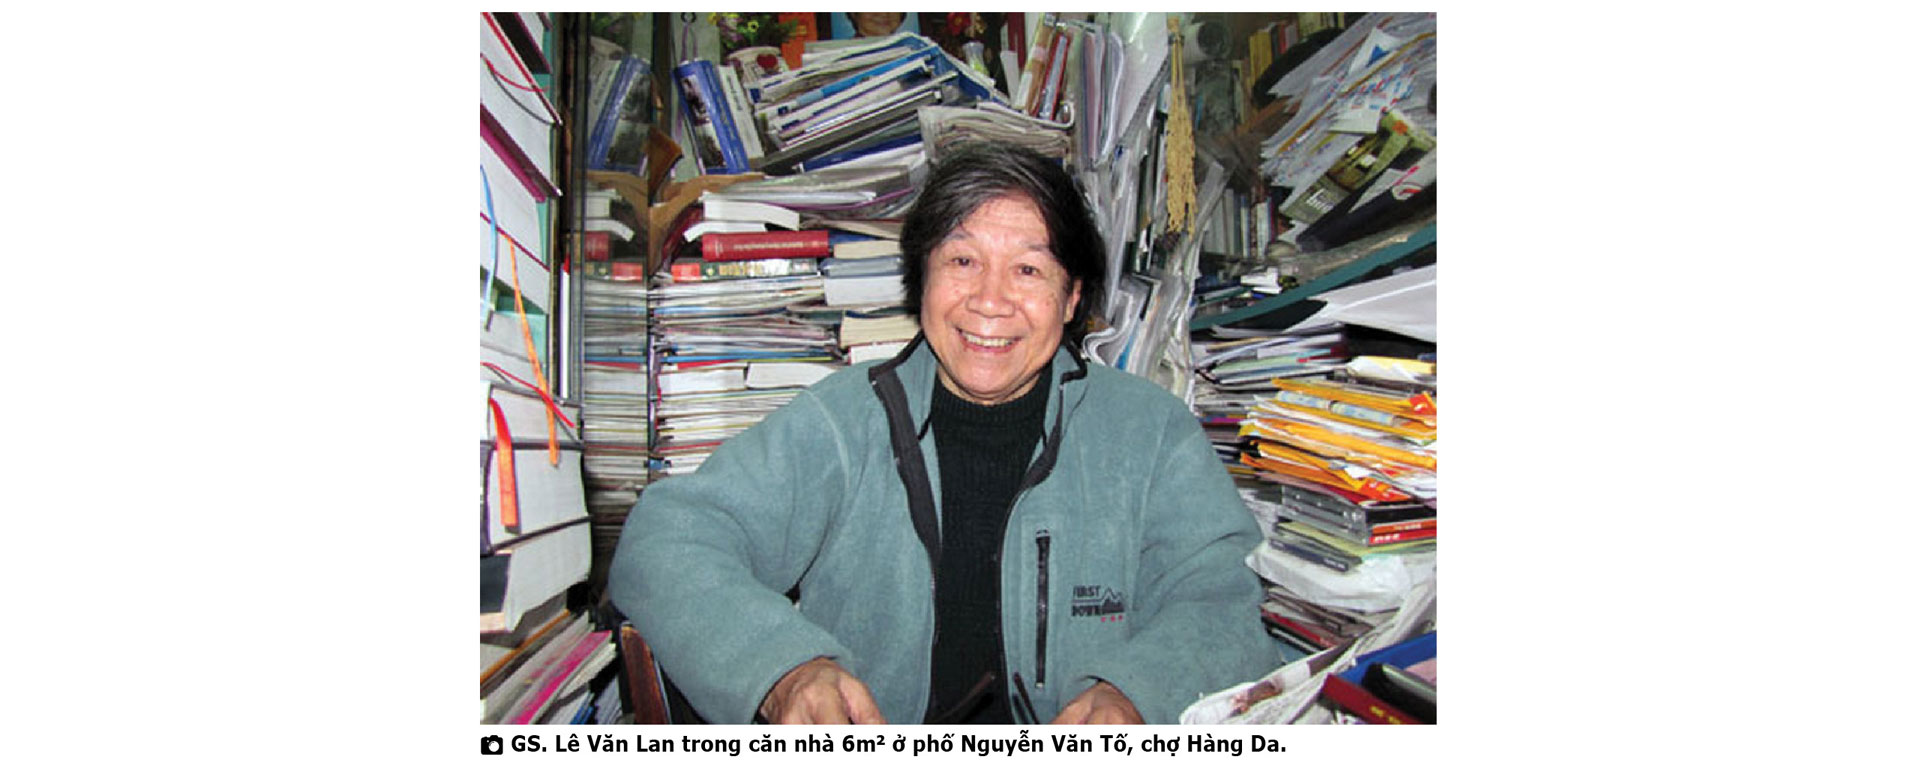 Giáo sư Lê Văn Lan: Một đời nghiên cứu cổ sử và chuyện tình yêu ở tuổi 90 - Ảnh 2.